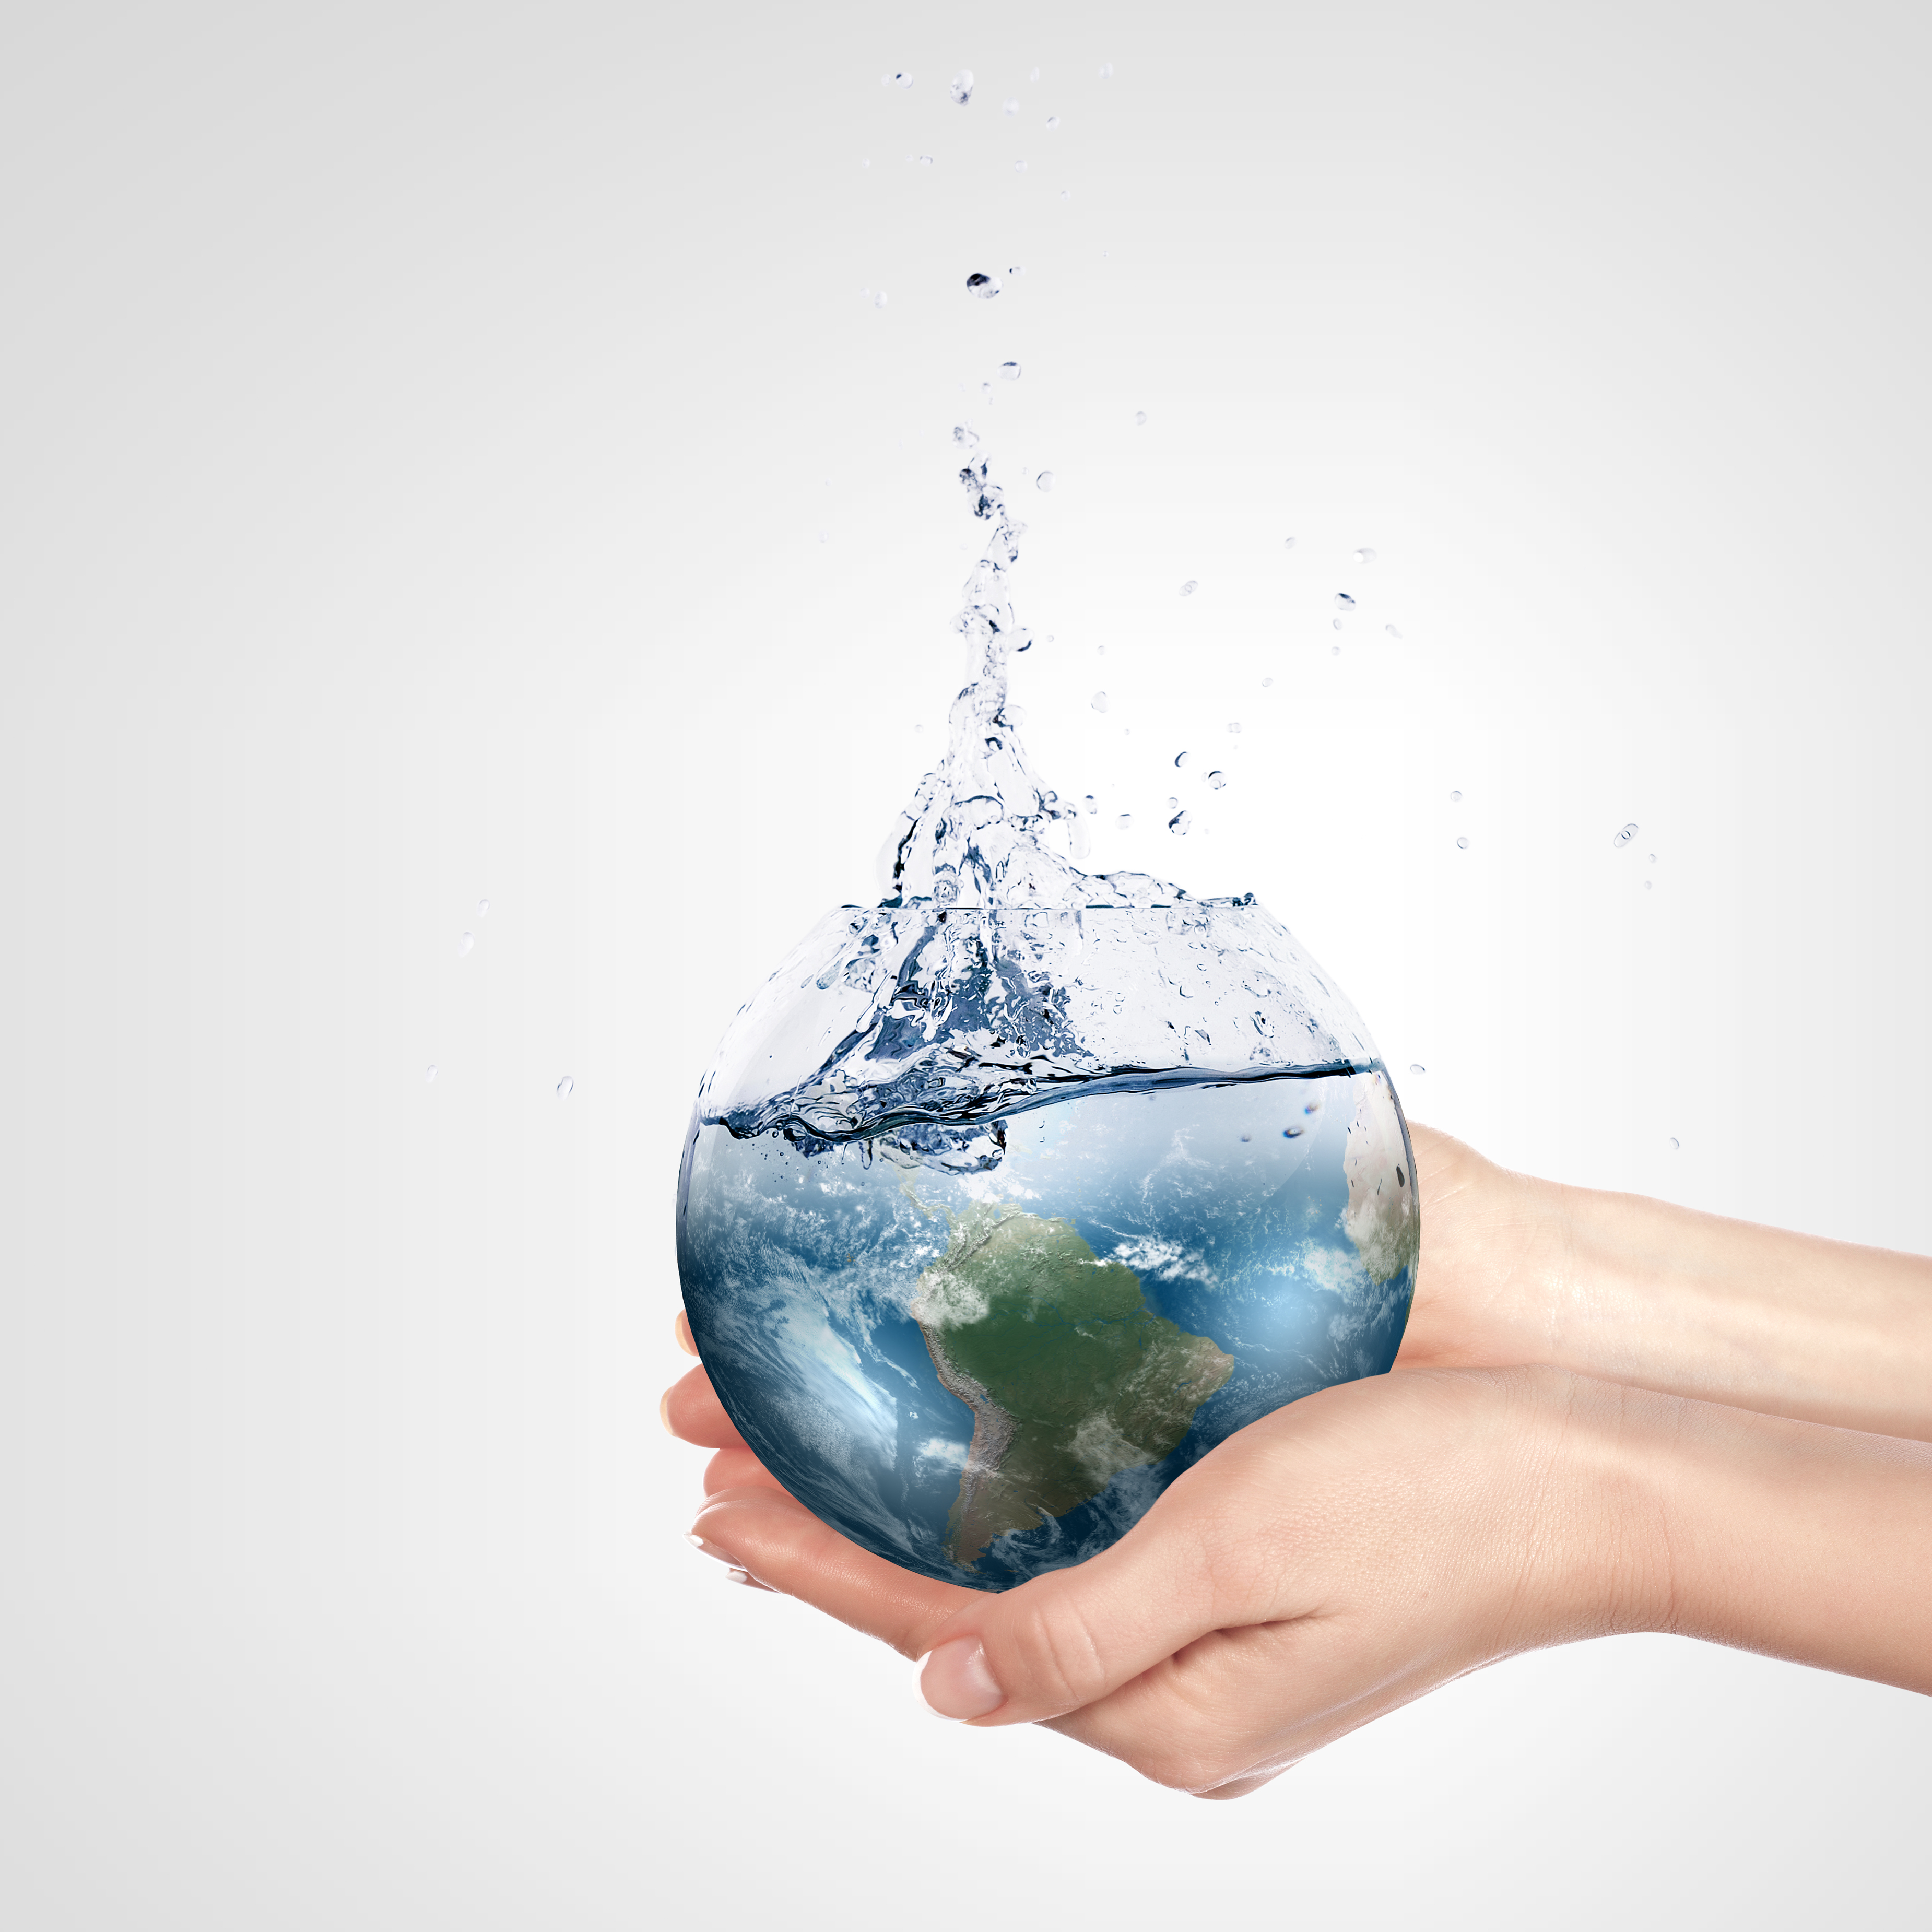 Water ecology. Экология воды. Чистота воды. Планета вода. Капля воды в руках.